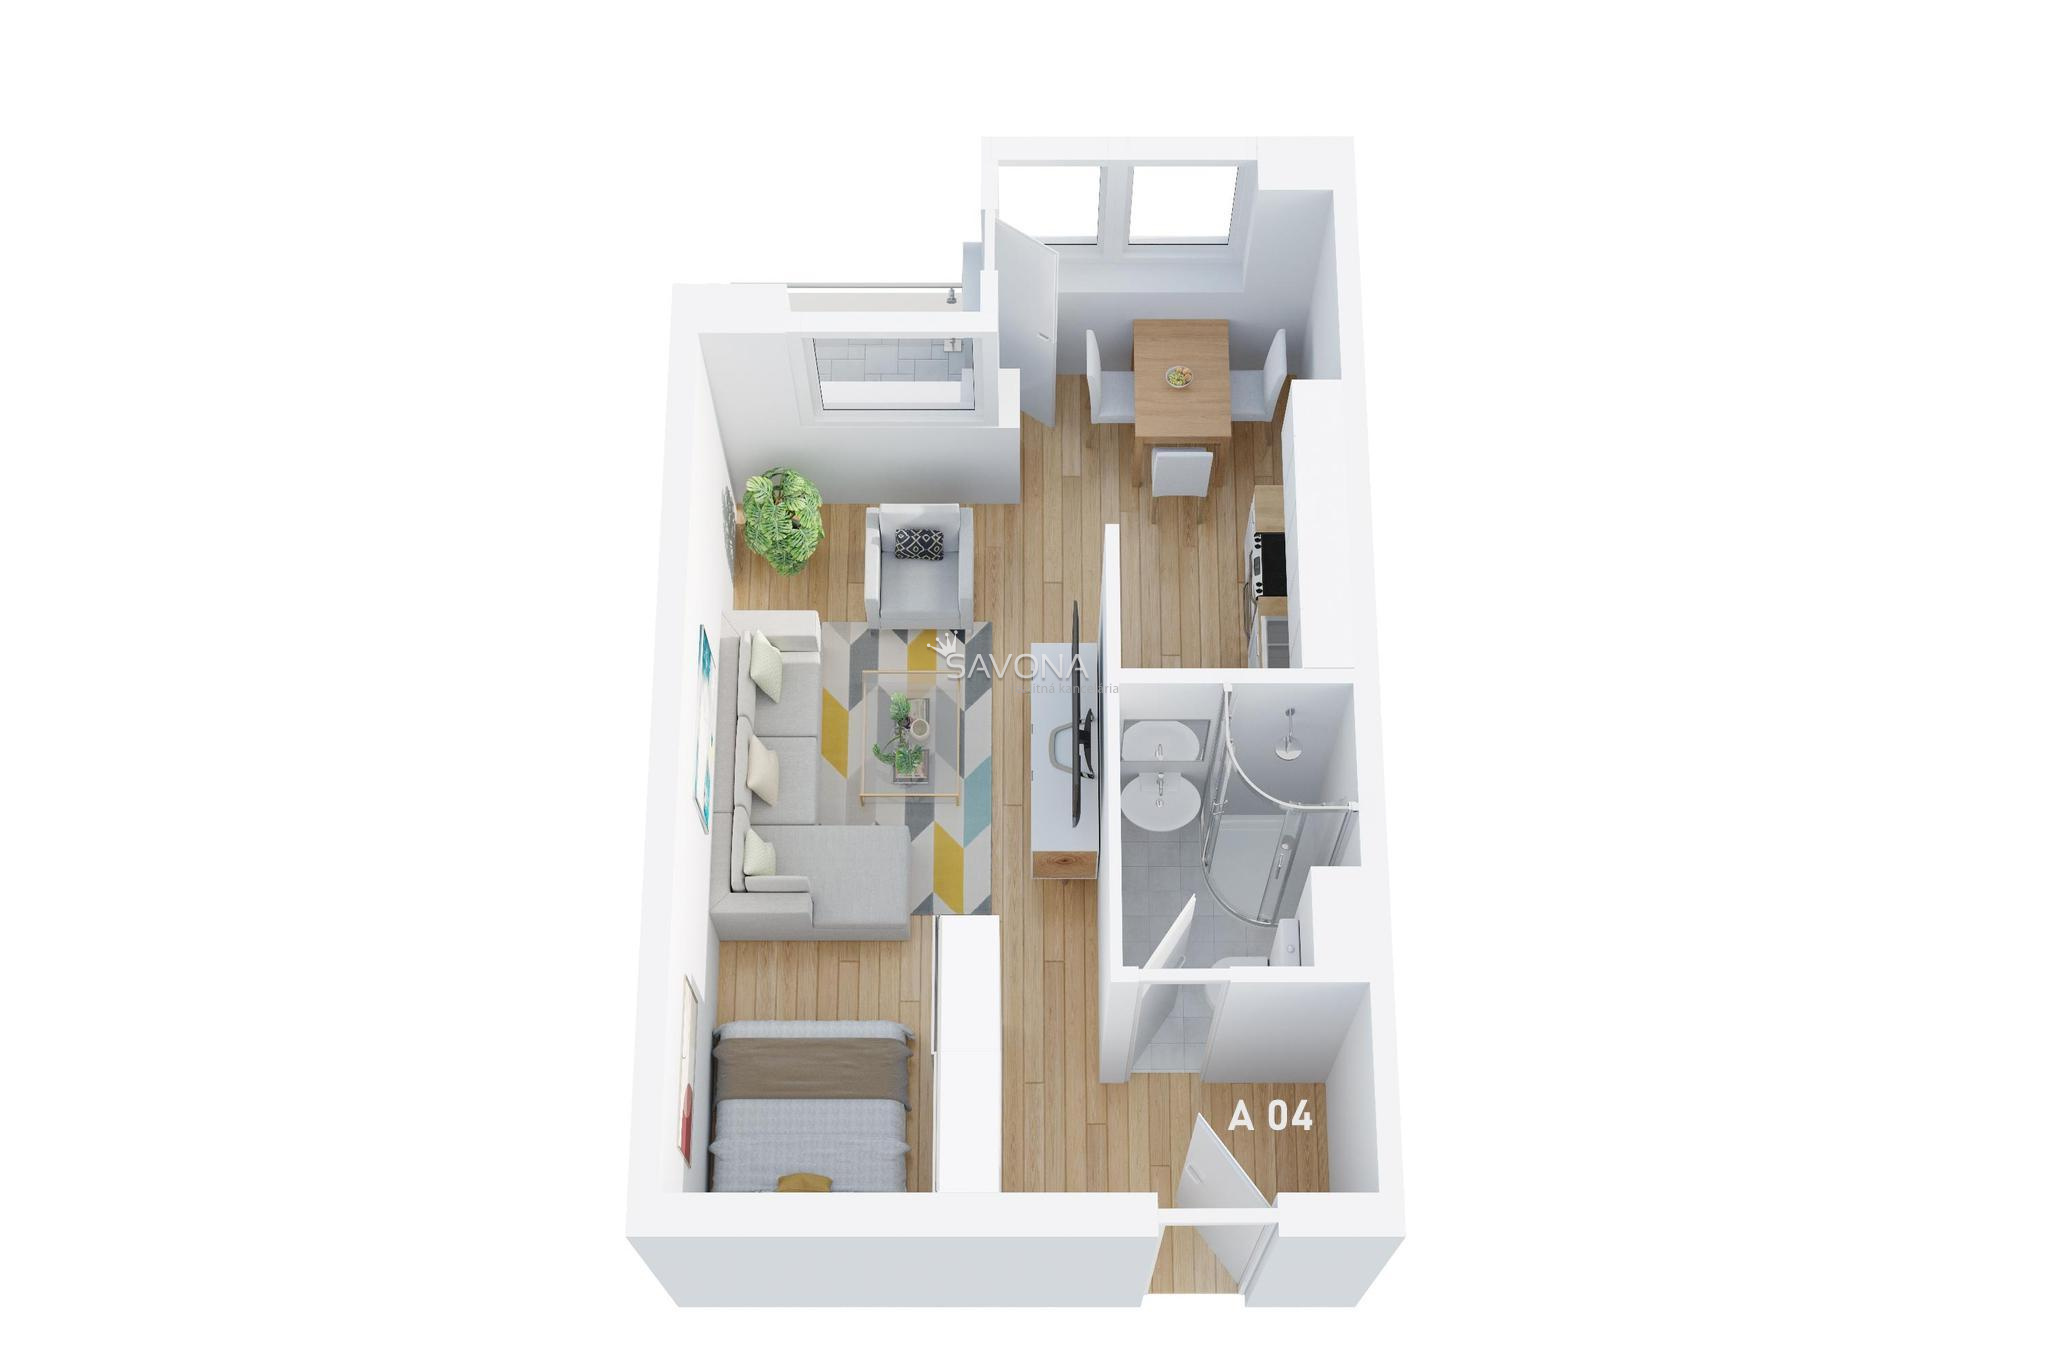 #napredaj 1 izbový byt | A 04 - 42 m2 – s výhľadom na TATRY